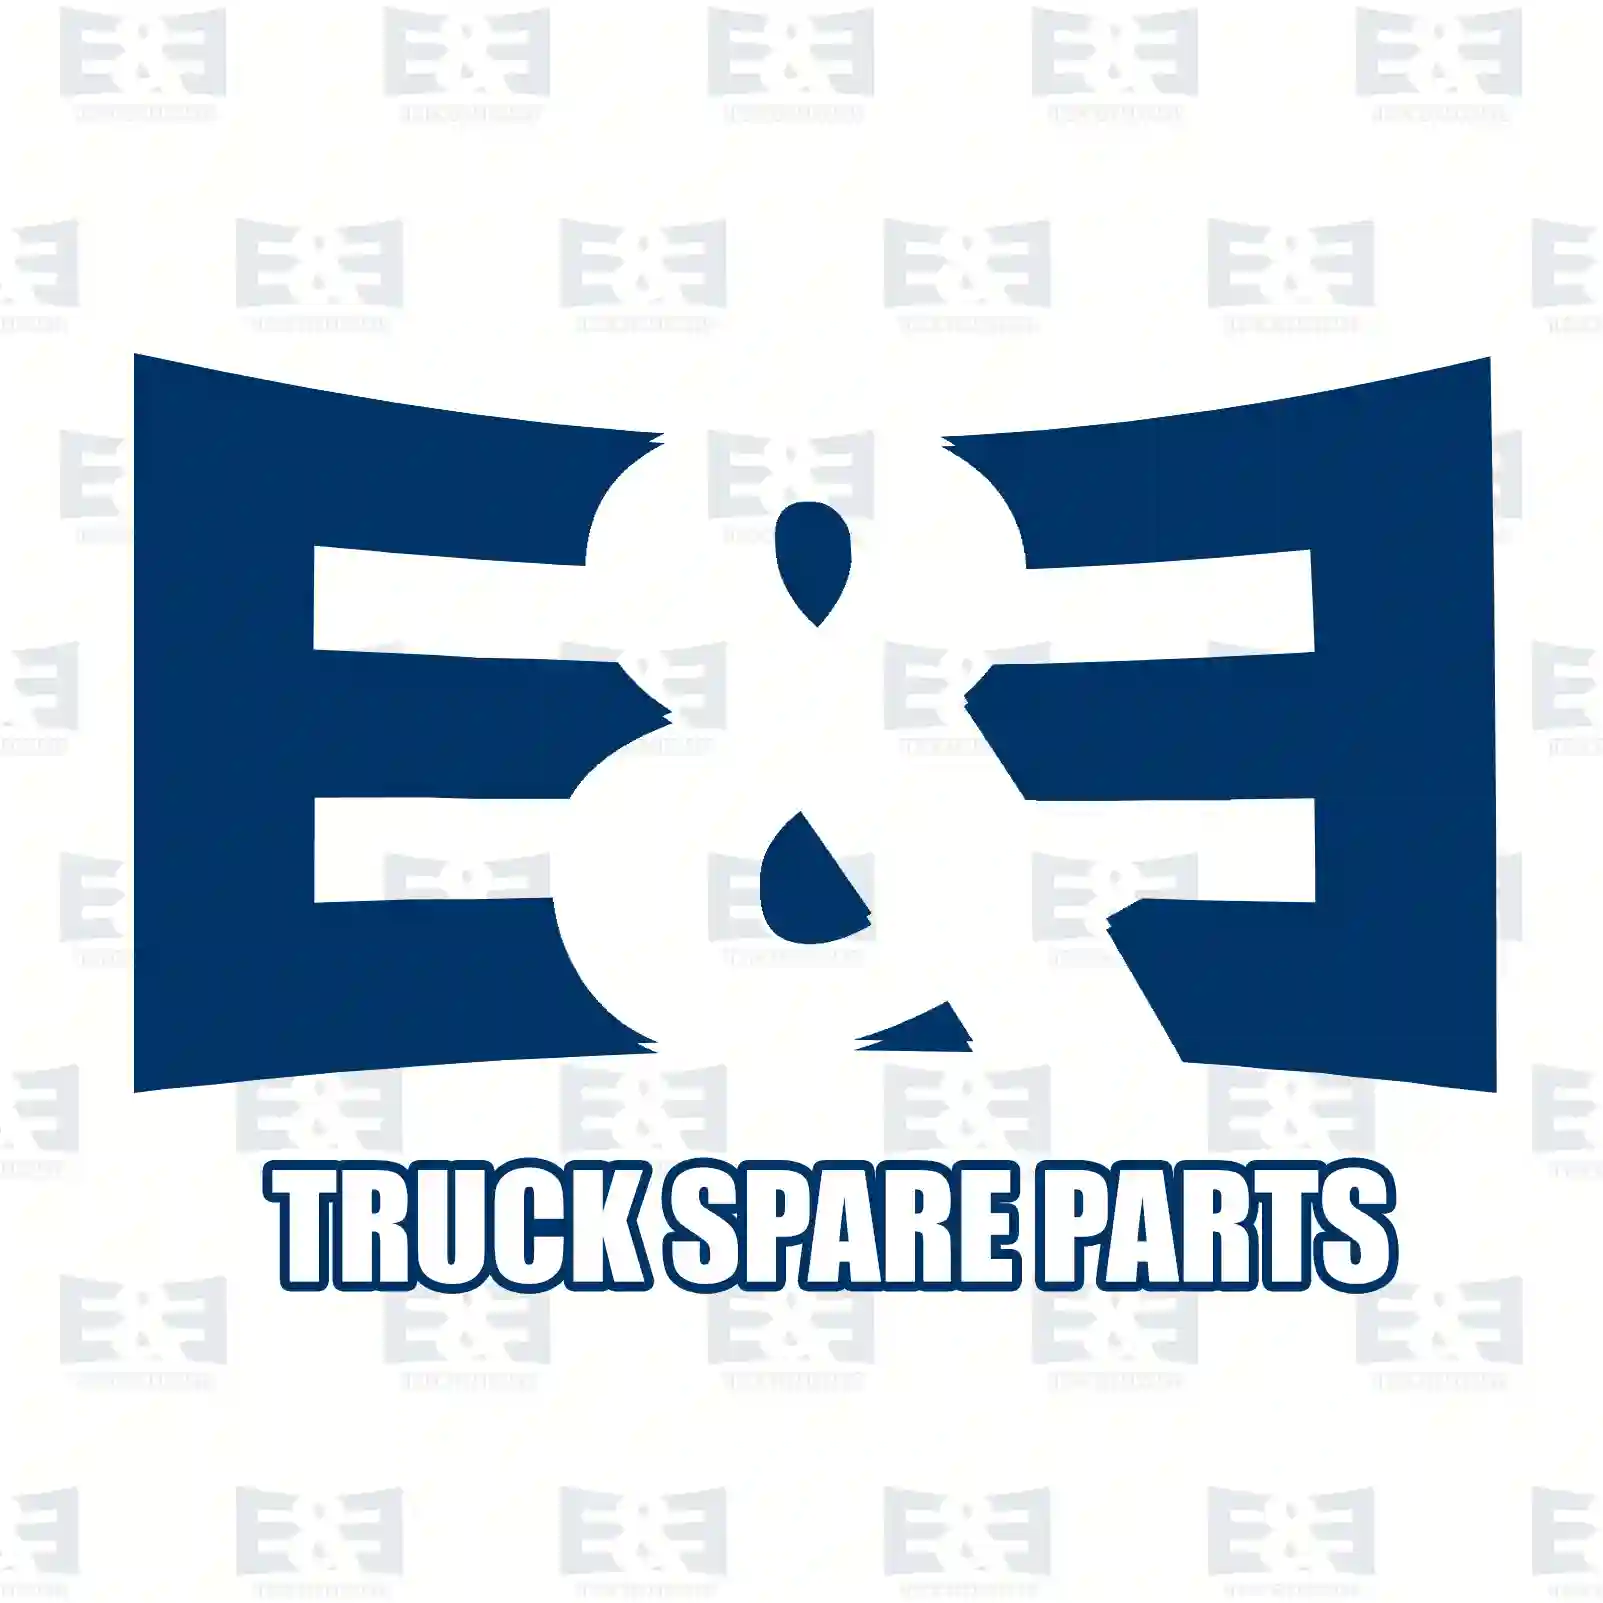 Bracket, fan ring, right, 2E2203339, 4422051240, 4422 ||  2E2203339 E&E Truck Spare Parts | Truck Spare Parts, Auotomotive Spare Parts Bracket, fan ring, right, 2E2203339, 4422051240, 4422 ||  2E2203339 E&E Truck Spare Parts | Truck Spare Parts, Auotomotive Spare Parts